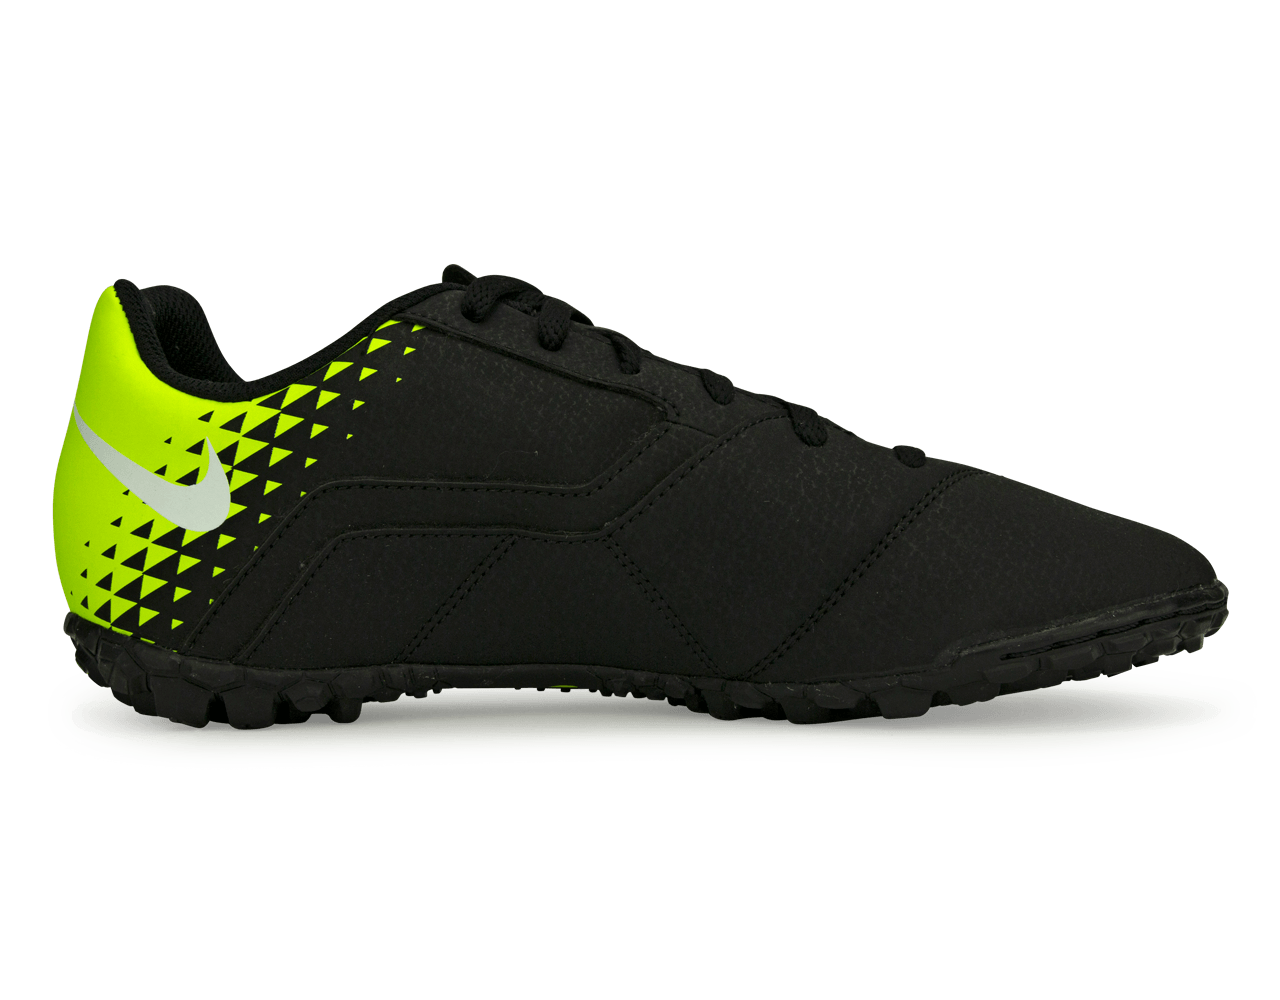 Nike Kids BombaX Turf Soccer Shoes Black/Volt/White